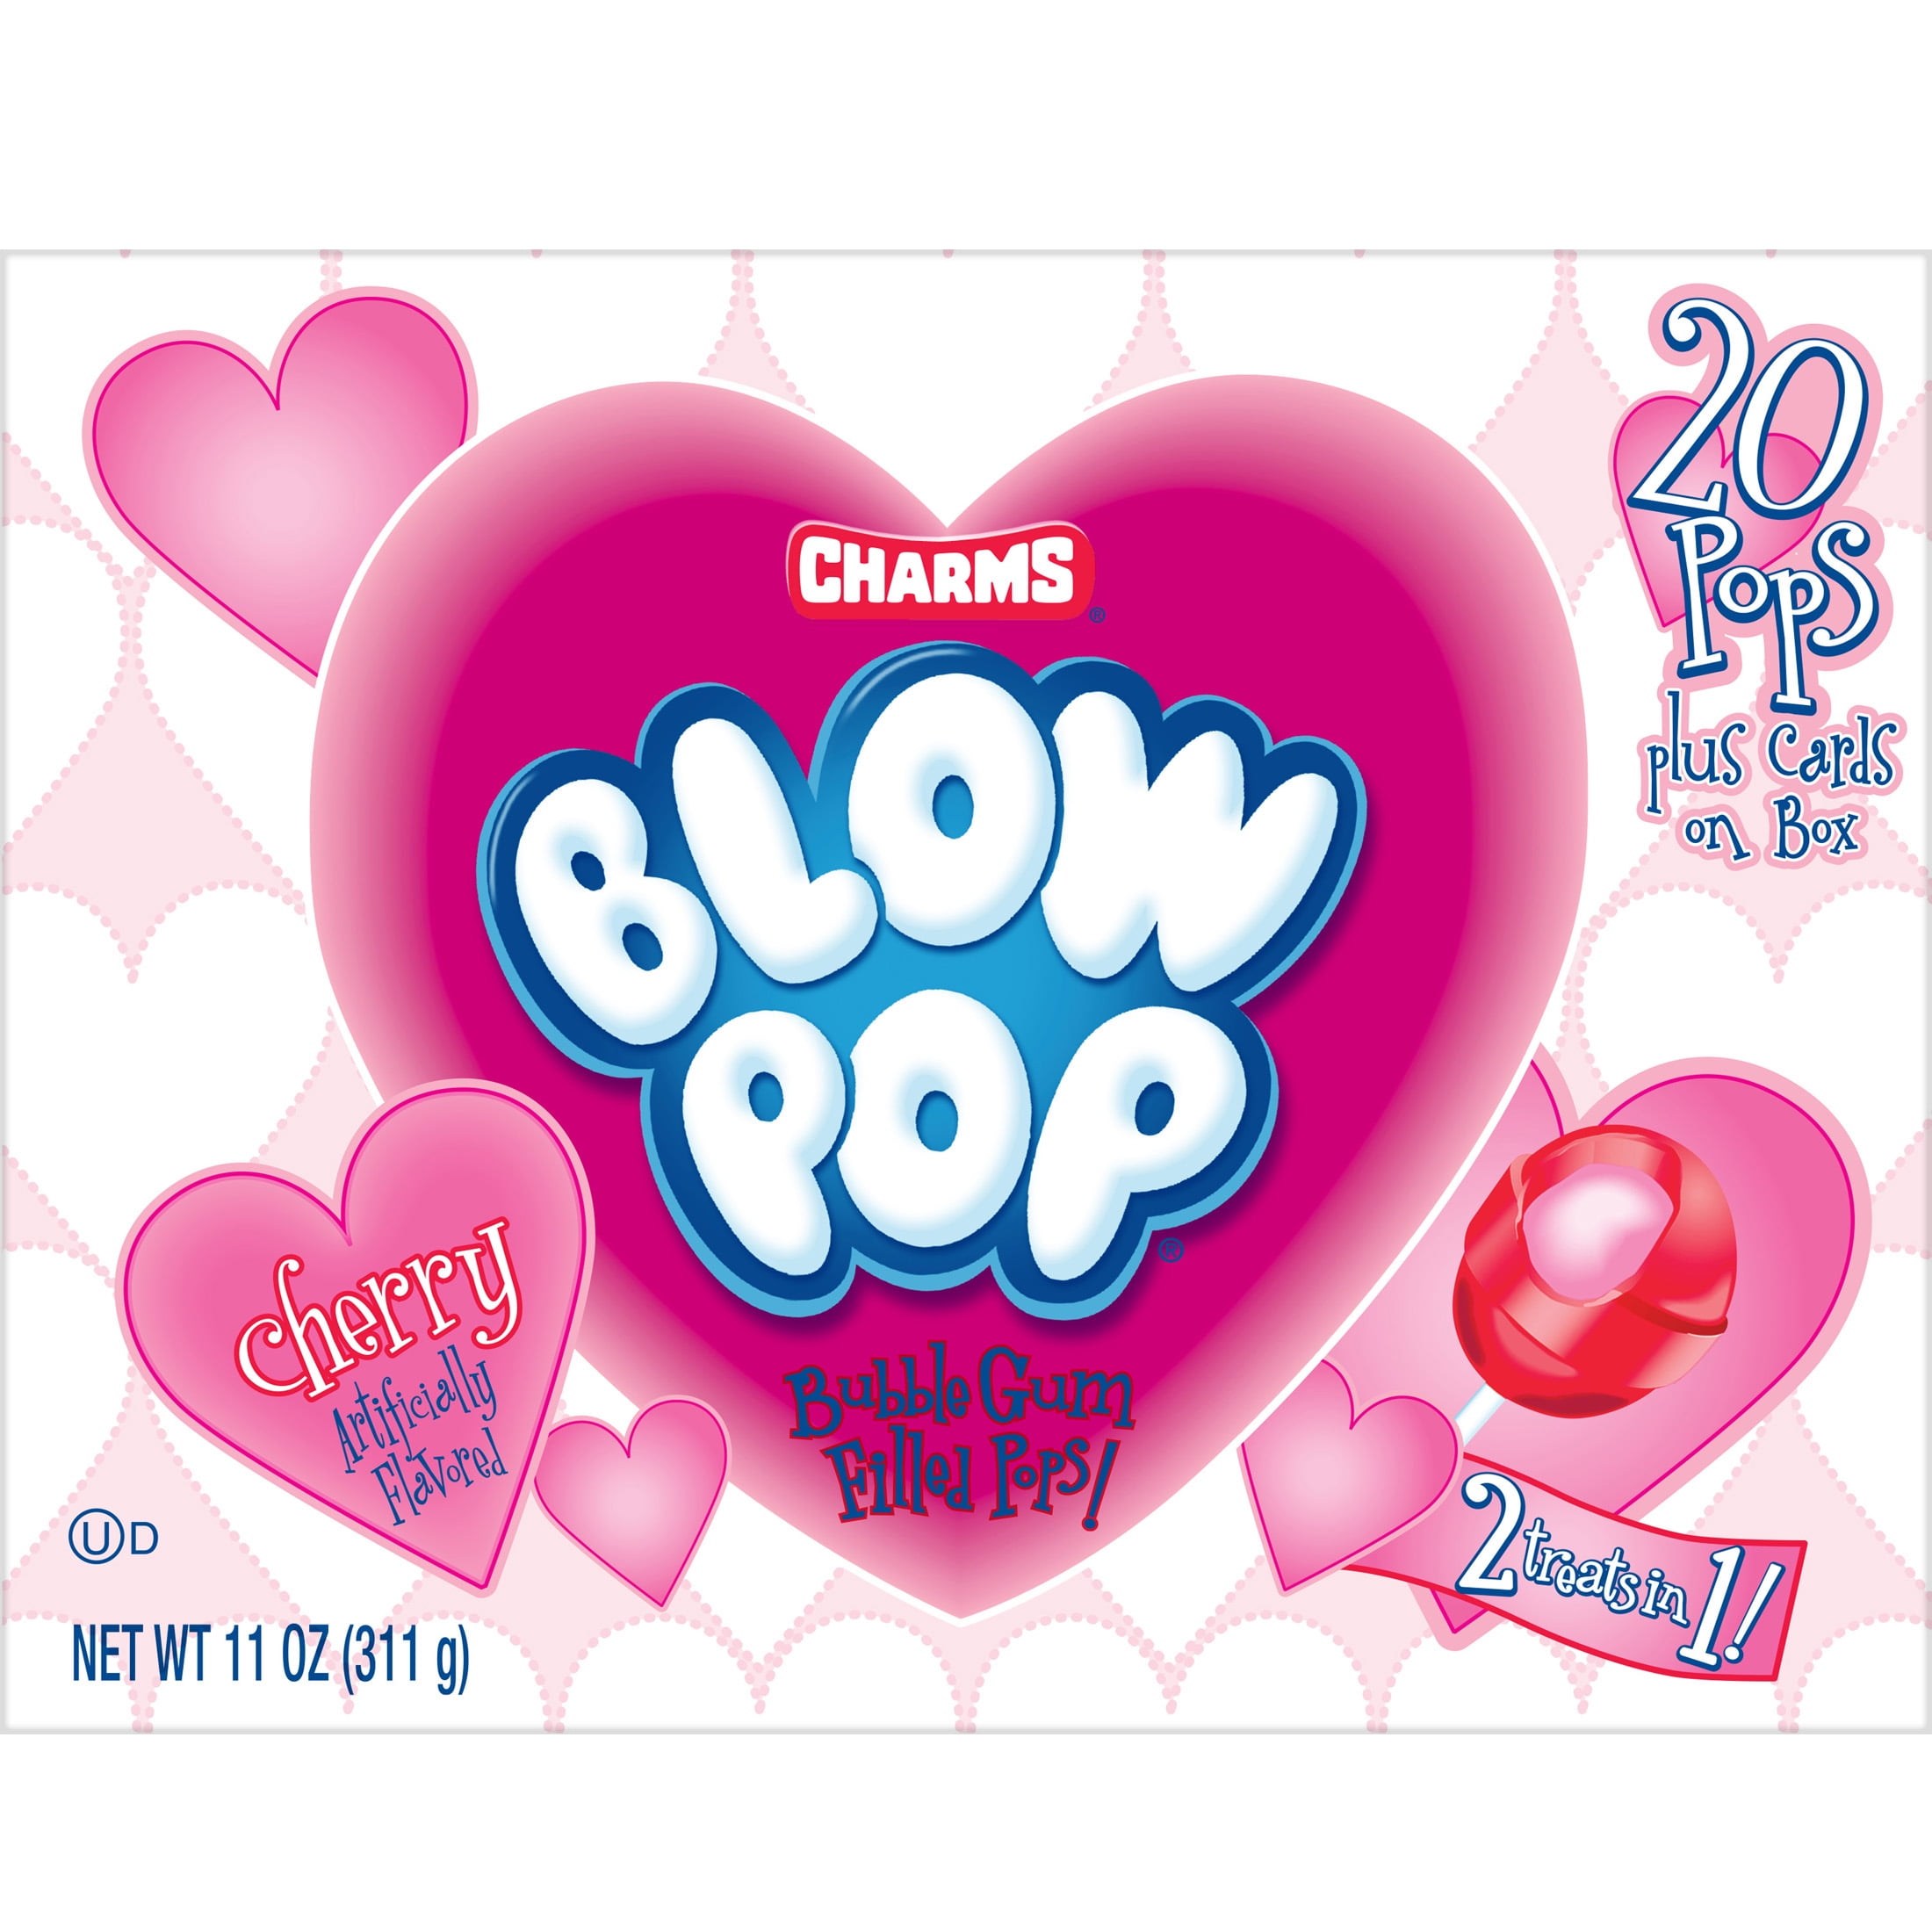 Blow Pop Pops, Cherry, Bubble Gum Filled - 11.5 oz